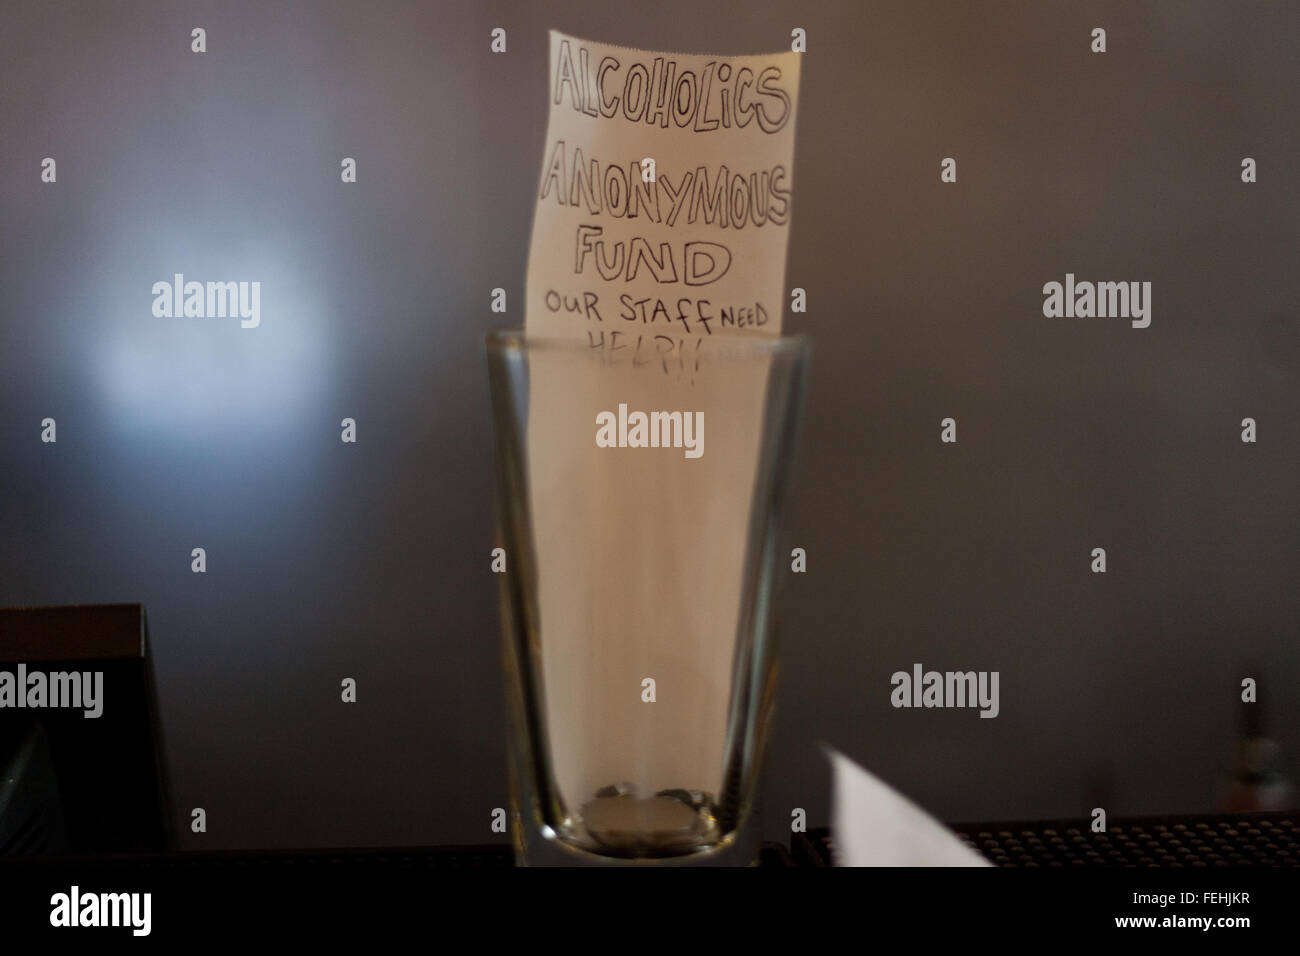 "Alkoholiker anonyme Fonds" geschrieben auf Papier innen Tip Jar auf Bar in London Veranstaltungsort. Stockfoto